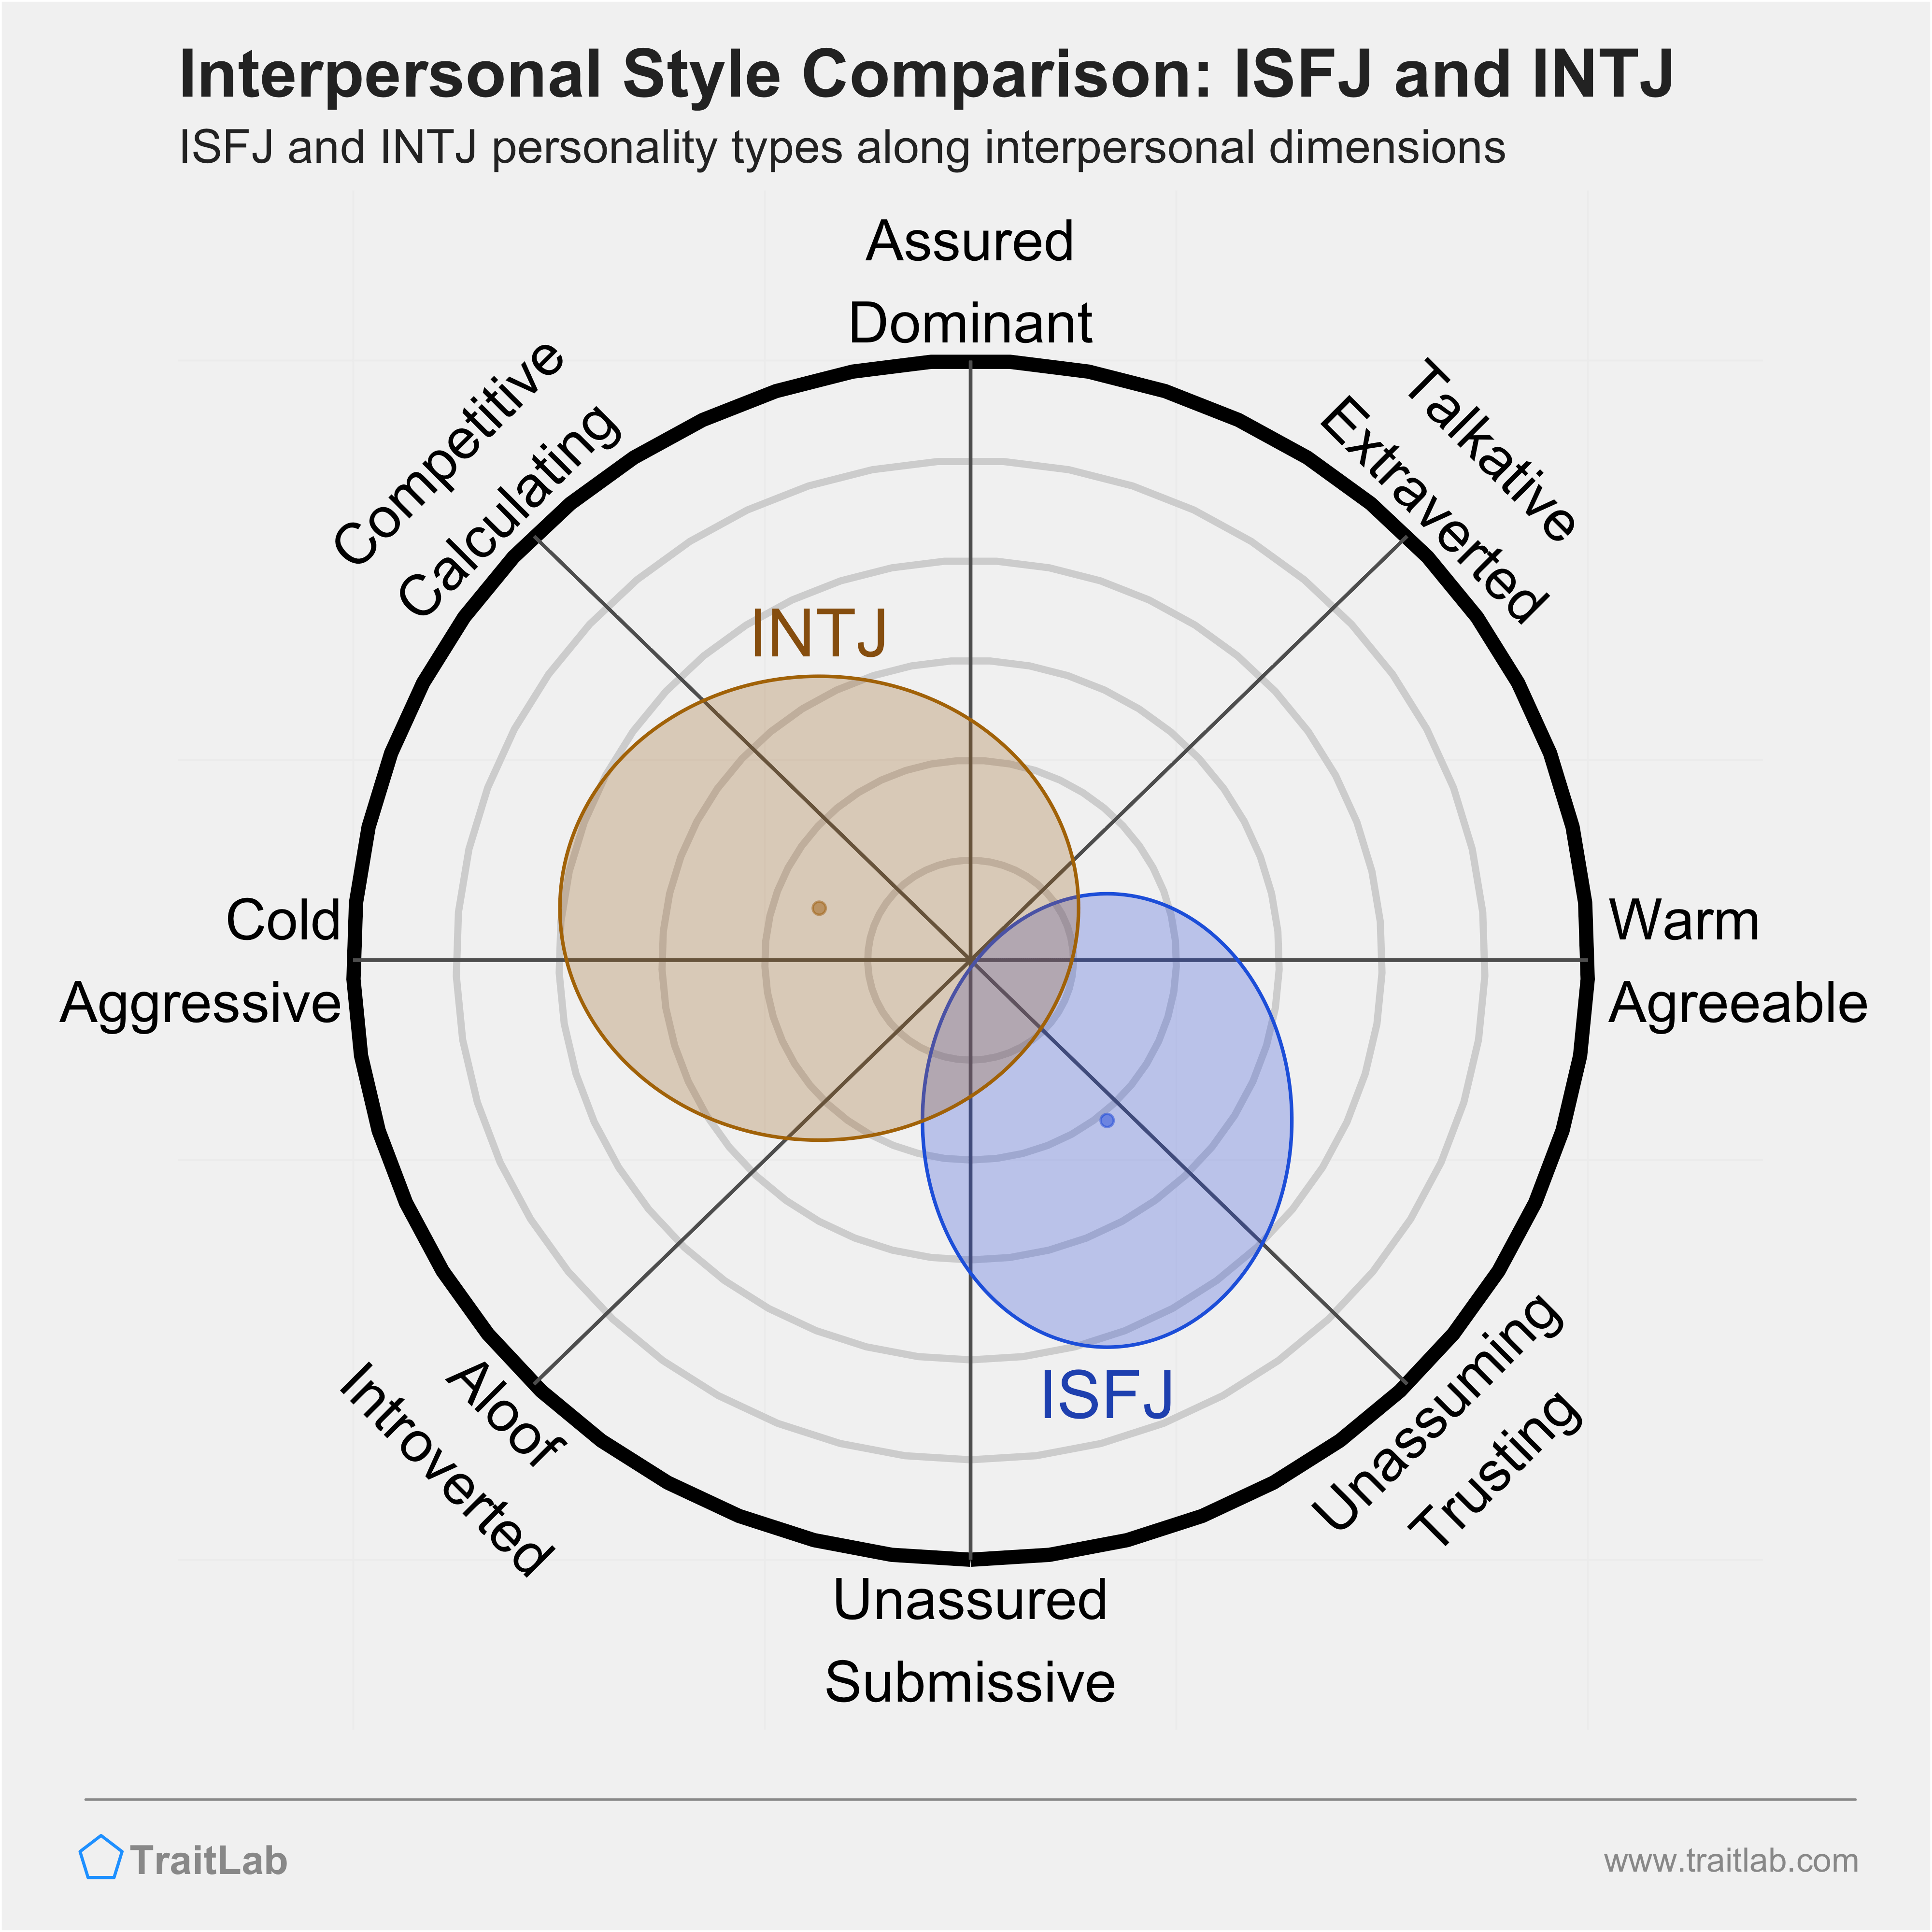 ISFJ and INTJ comparison across interpersonal dimensions